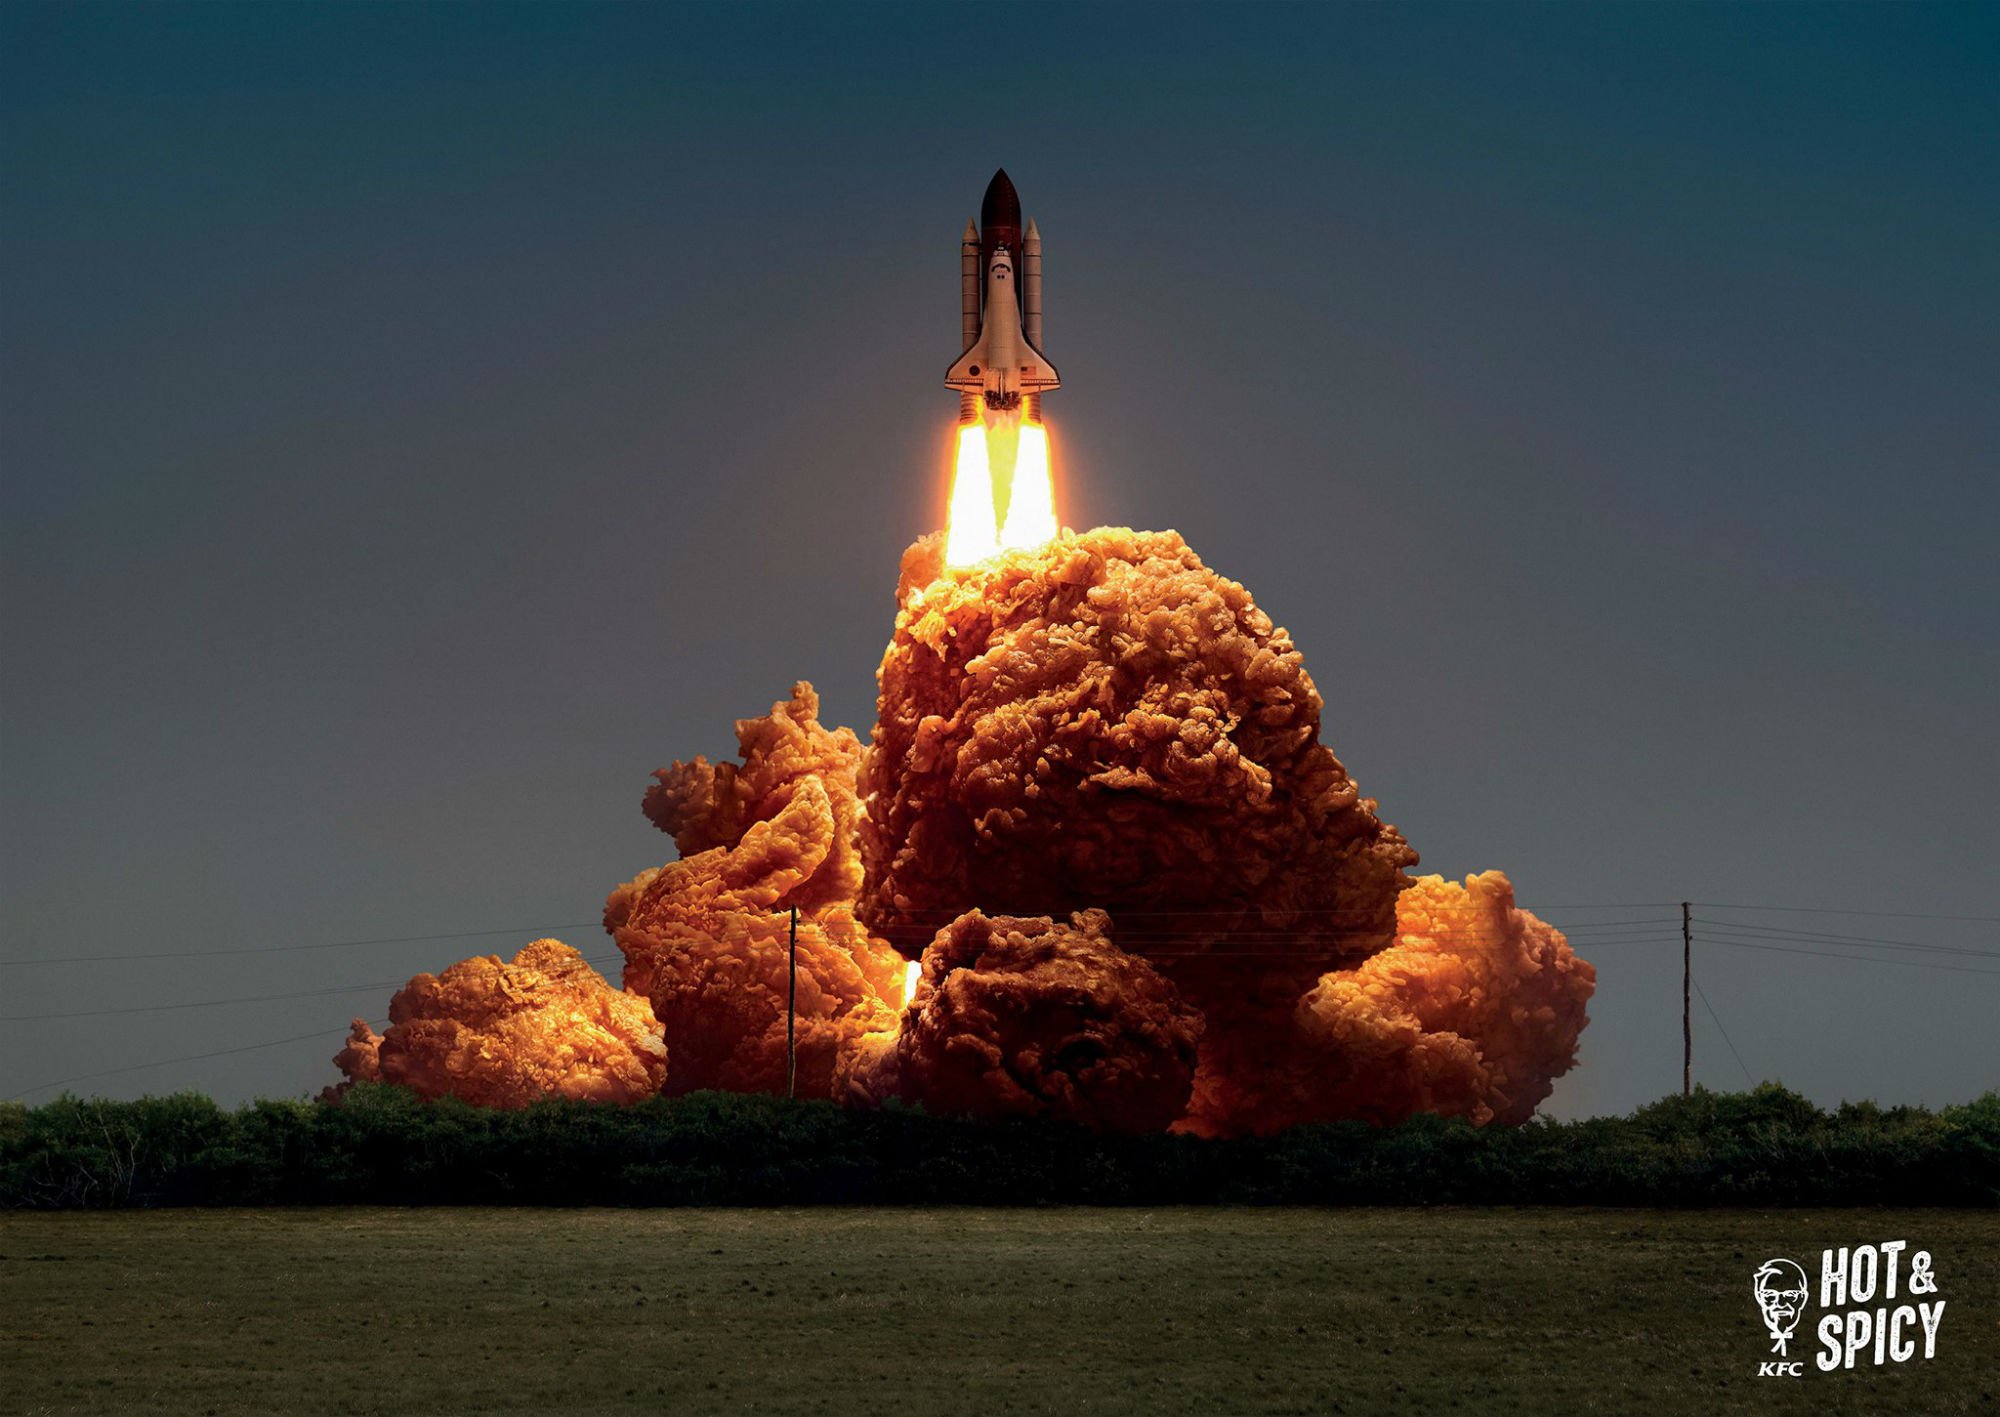 kfc photoshop space shuttle image 